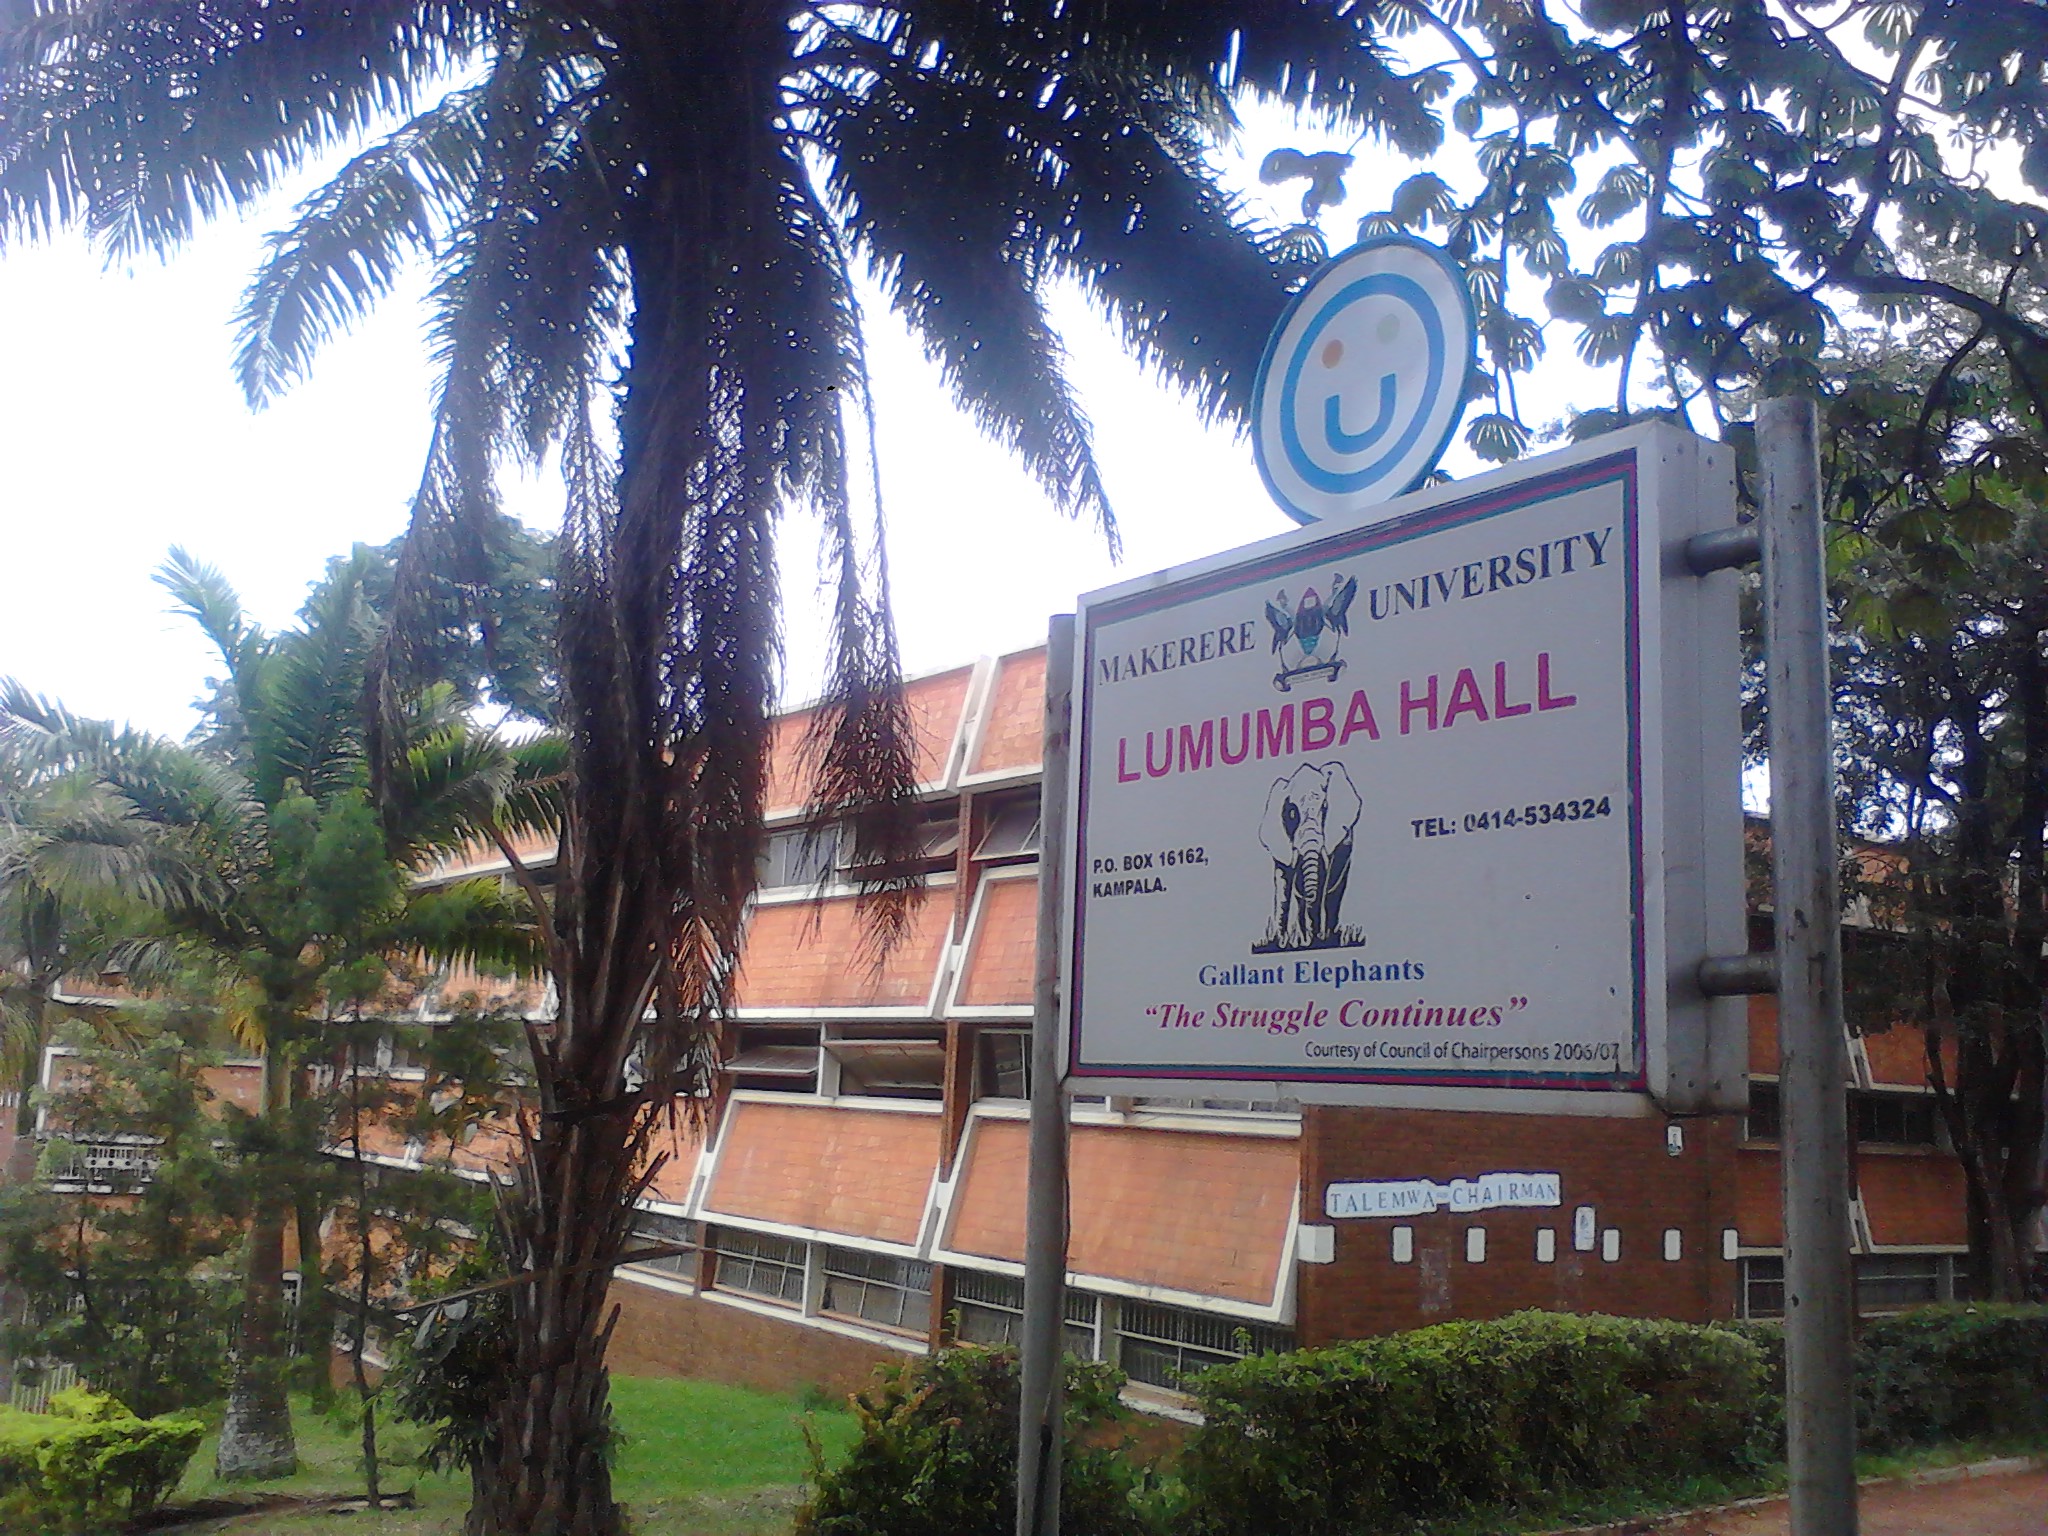 Lumumba Hall